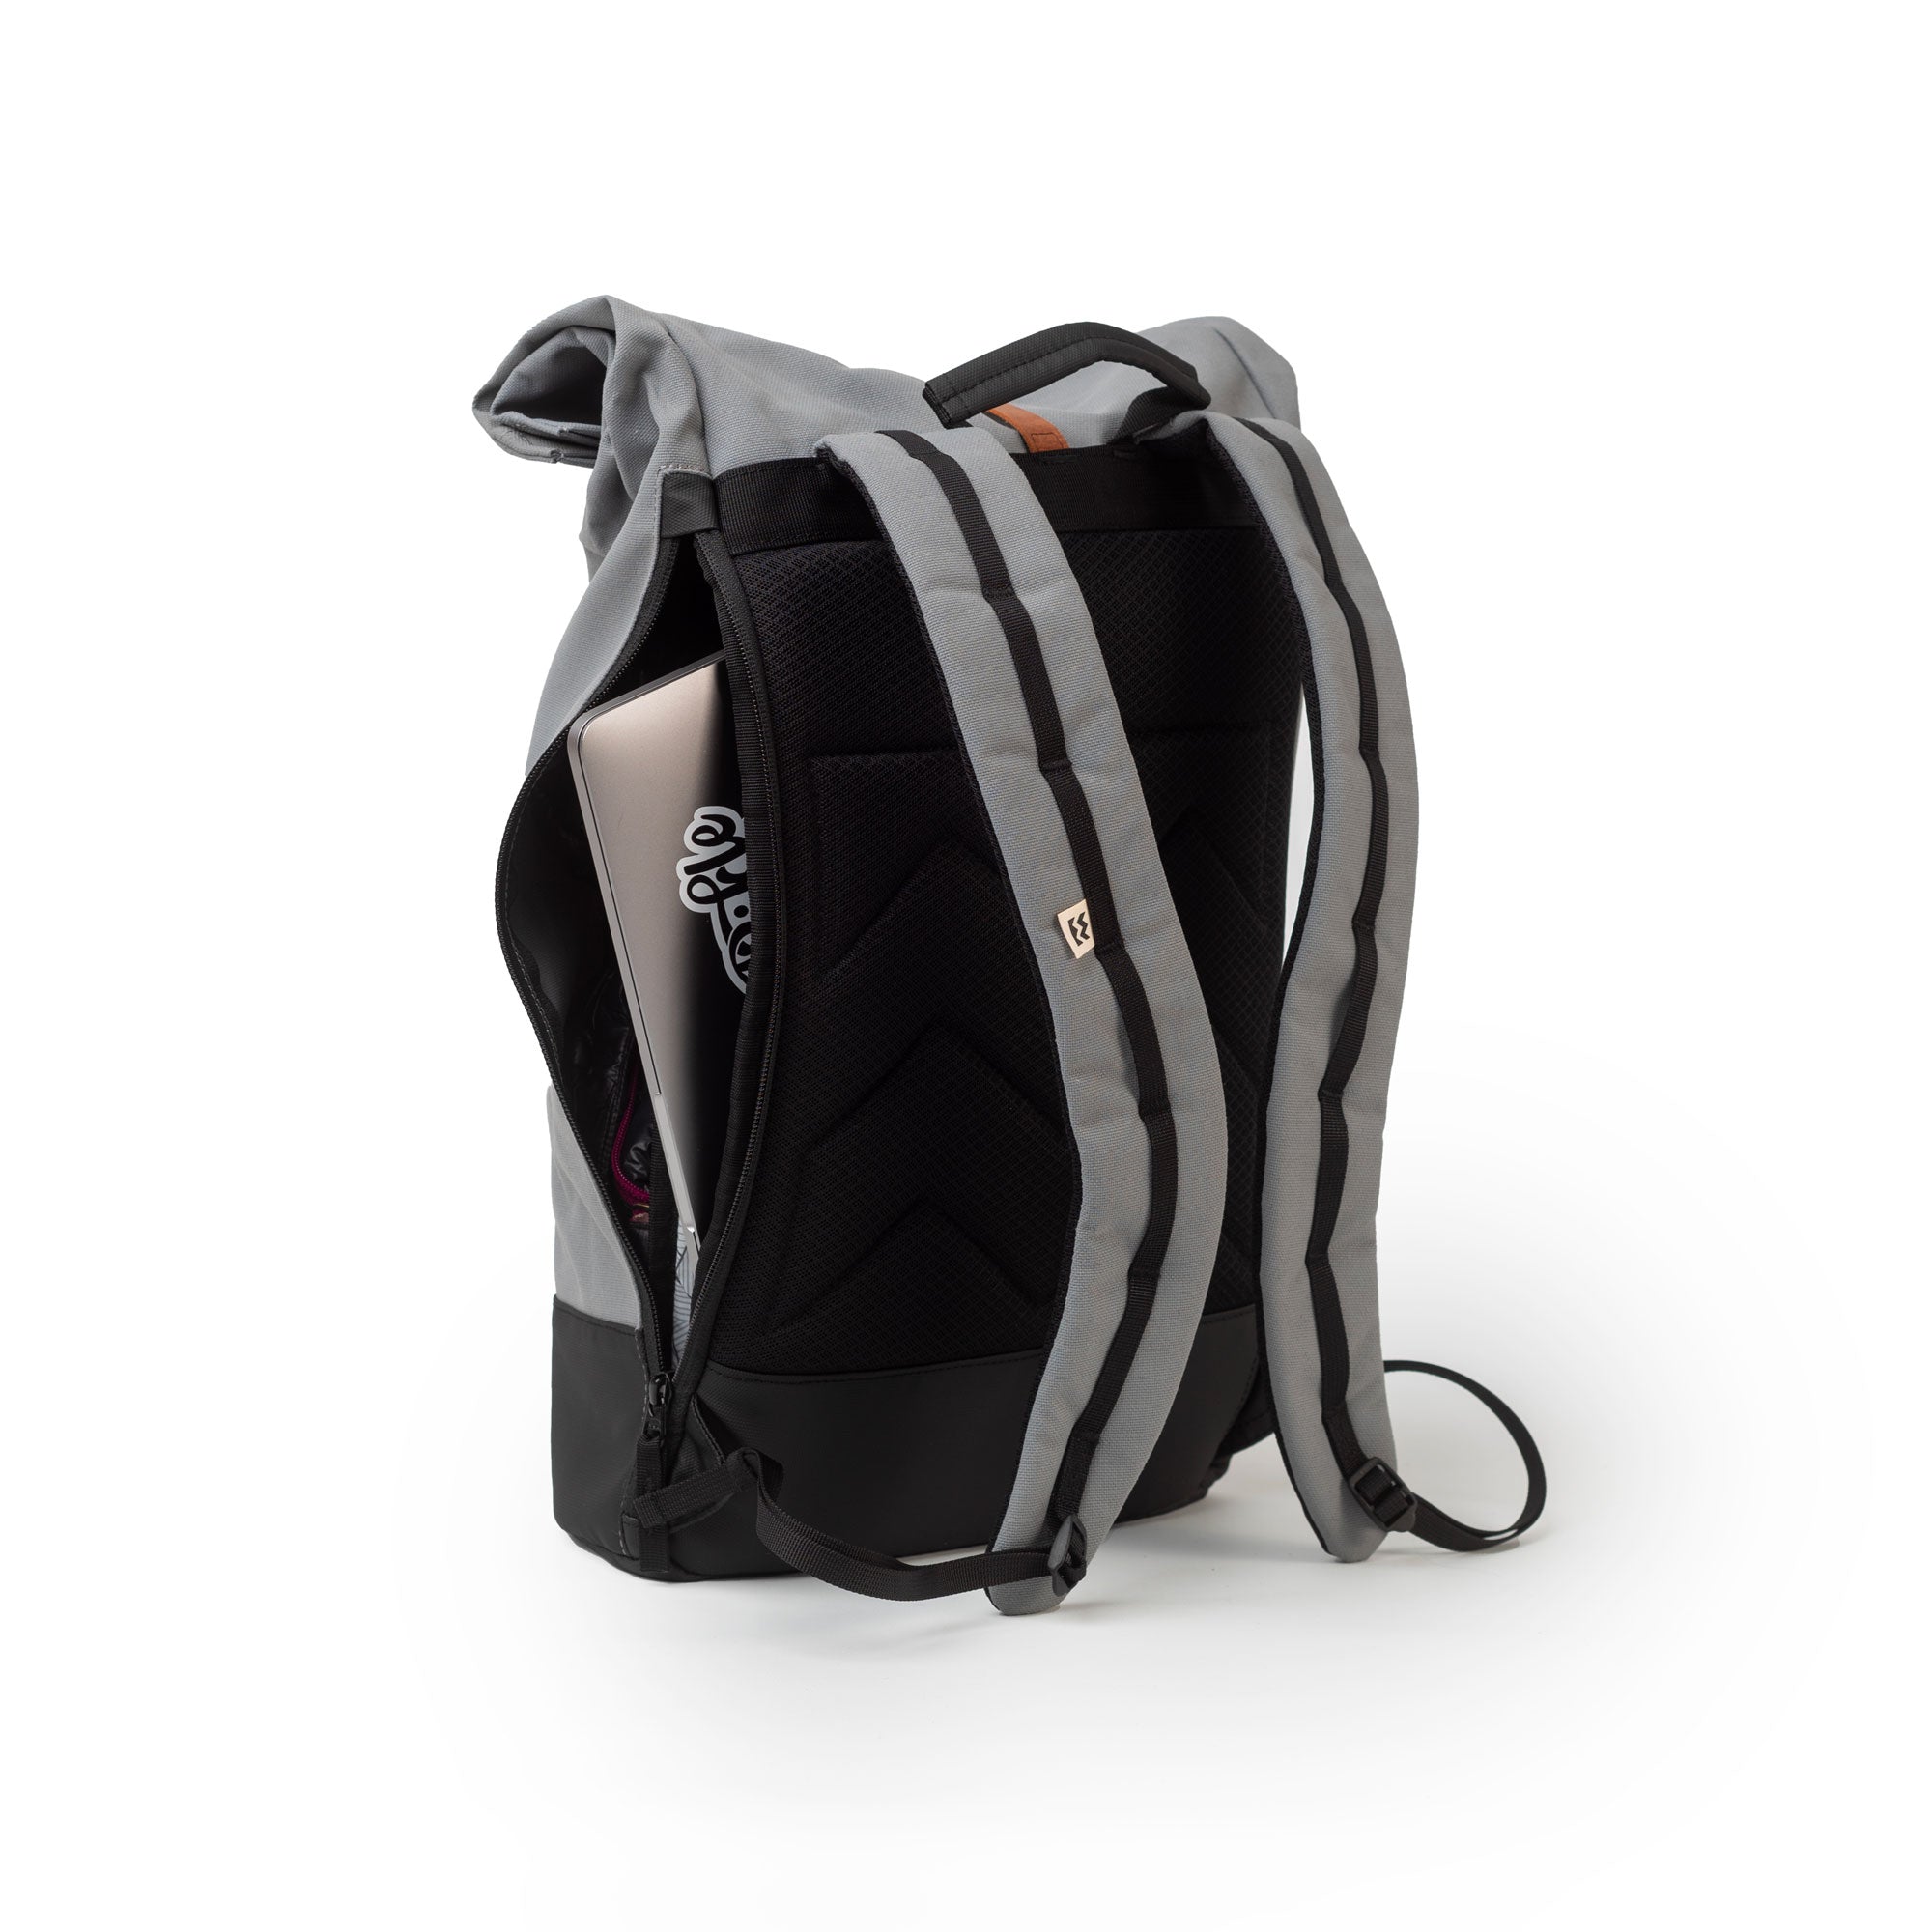 panneau dorsal respirant et rembourré et poche latérale d'accès rapide pour ordinateur portable du sac à dos vélo coursier urbain homme de mero mero